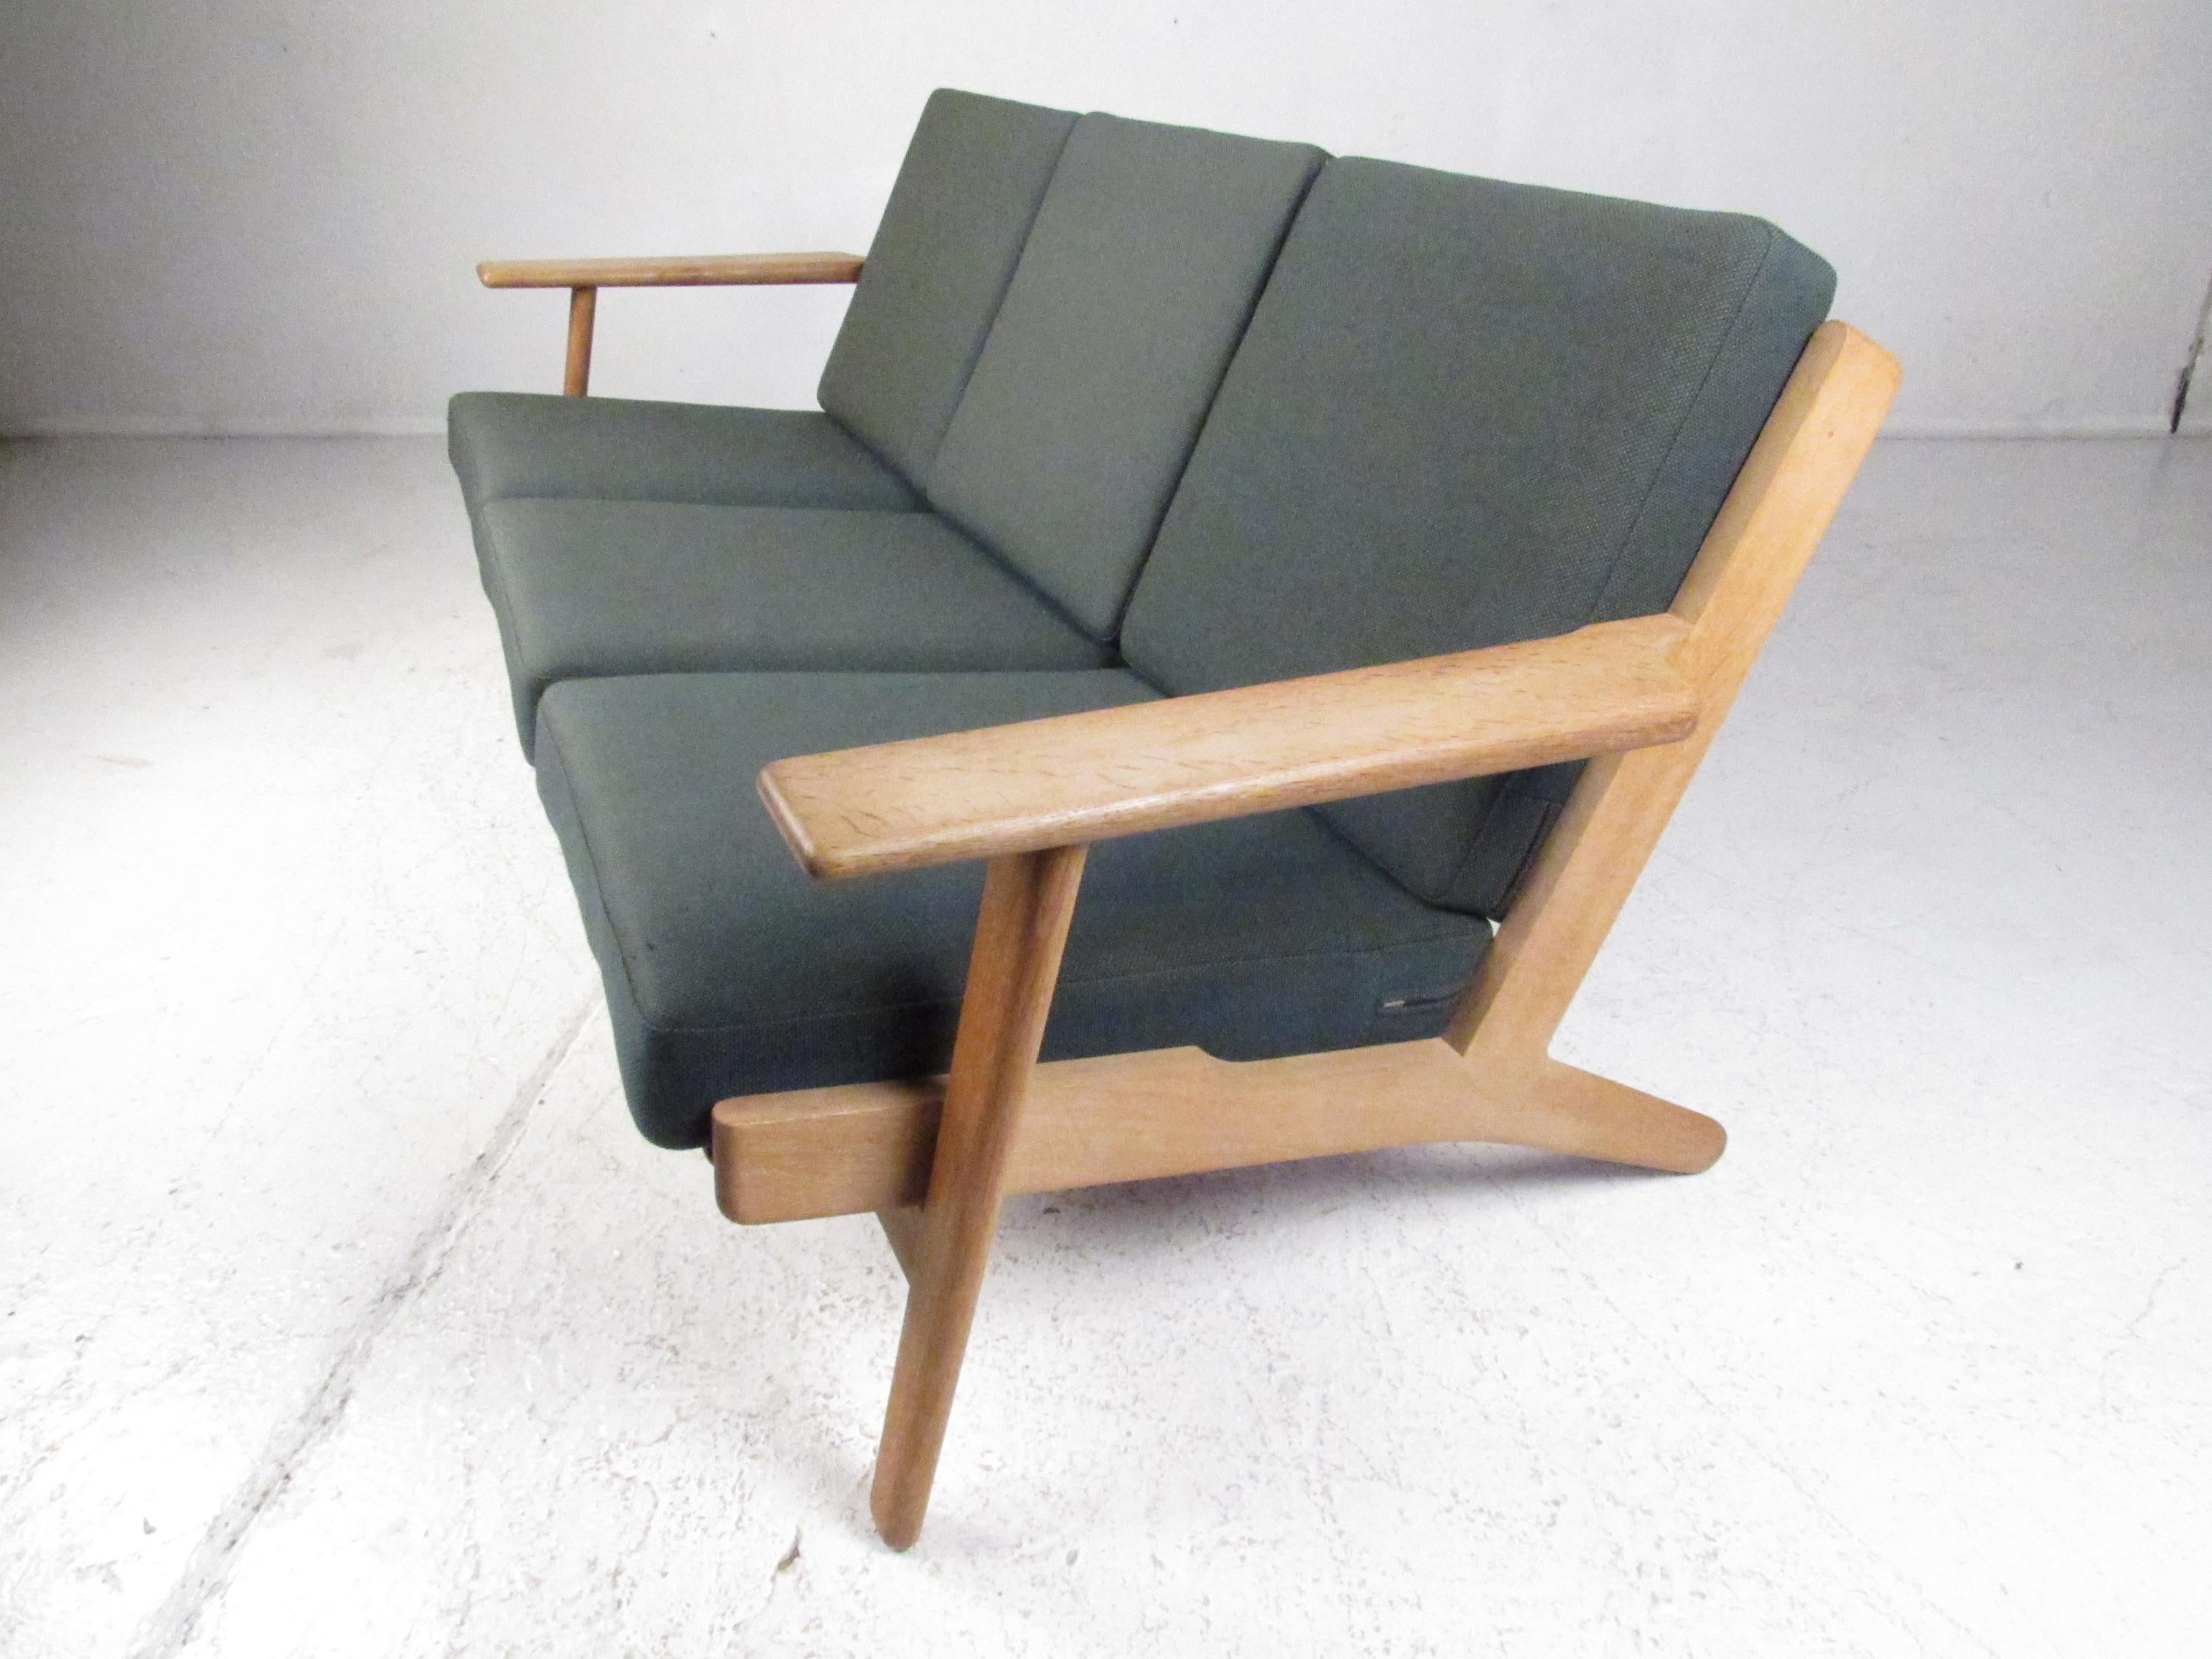 Dieses schöne moderne Dreisitzer-Sofa im Vintage-Stil verfügt über einen massiven Rahmen aus blonder Eiche mit breiten, geschwungenen Armlehnen und gespreizten Beinen. Ein bequemes Sofa mit sechs abnehmbaren Kissen, bezogen mit einem grünen